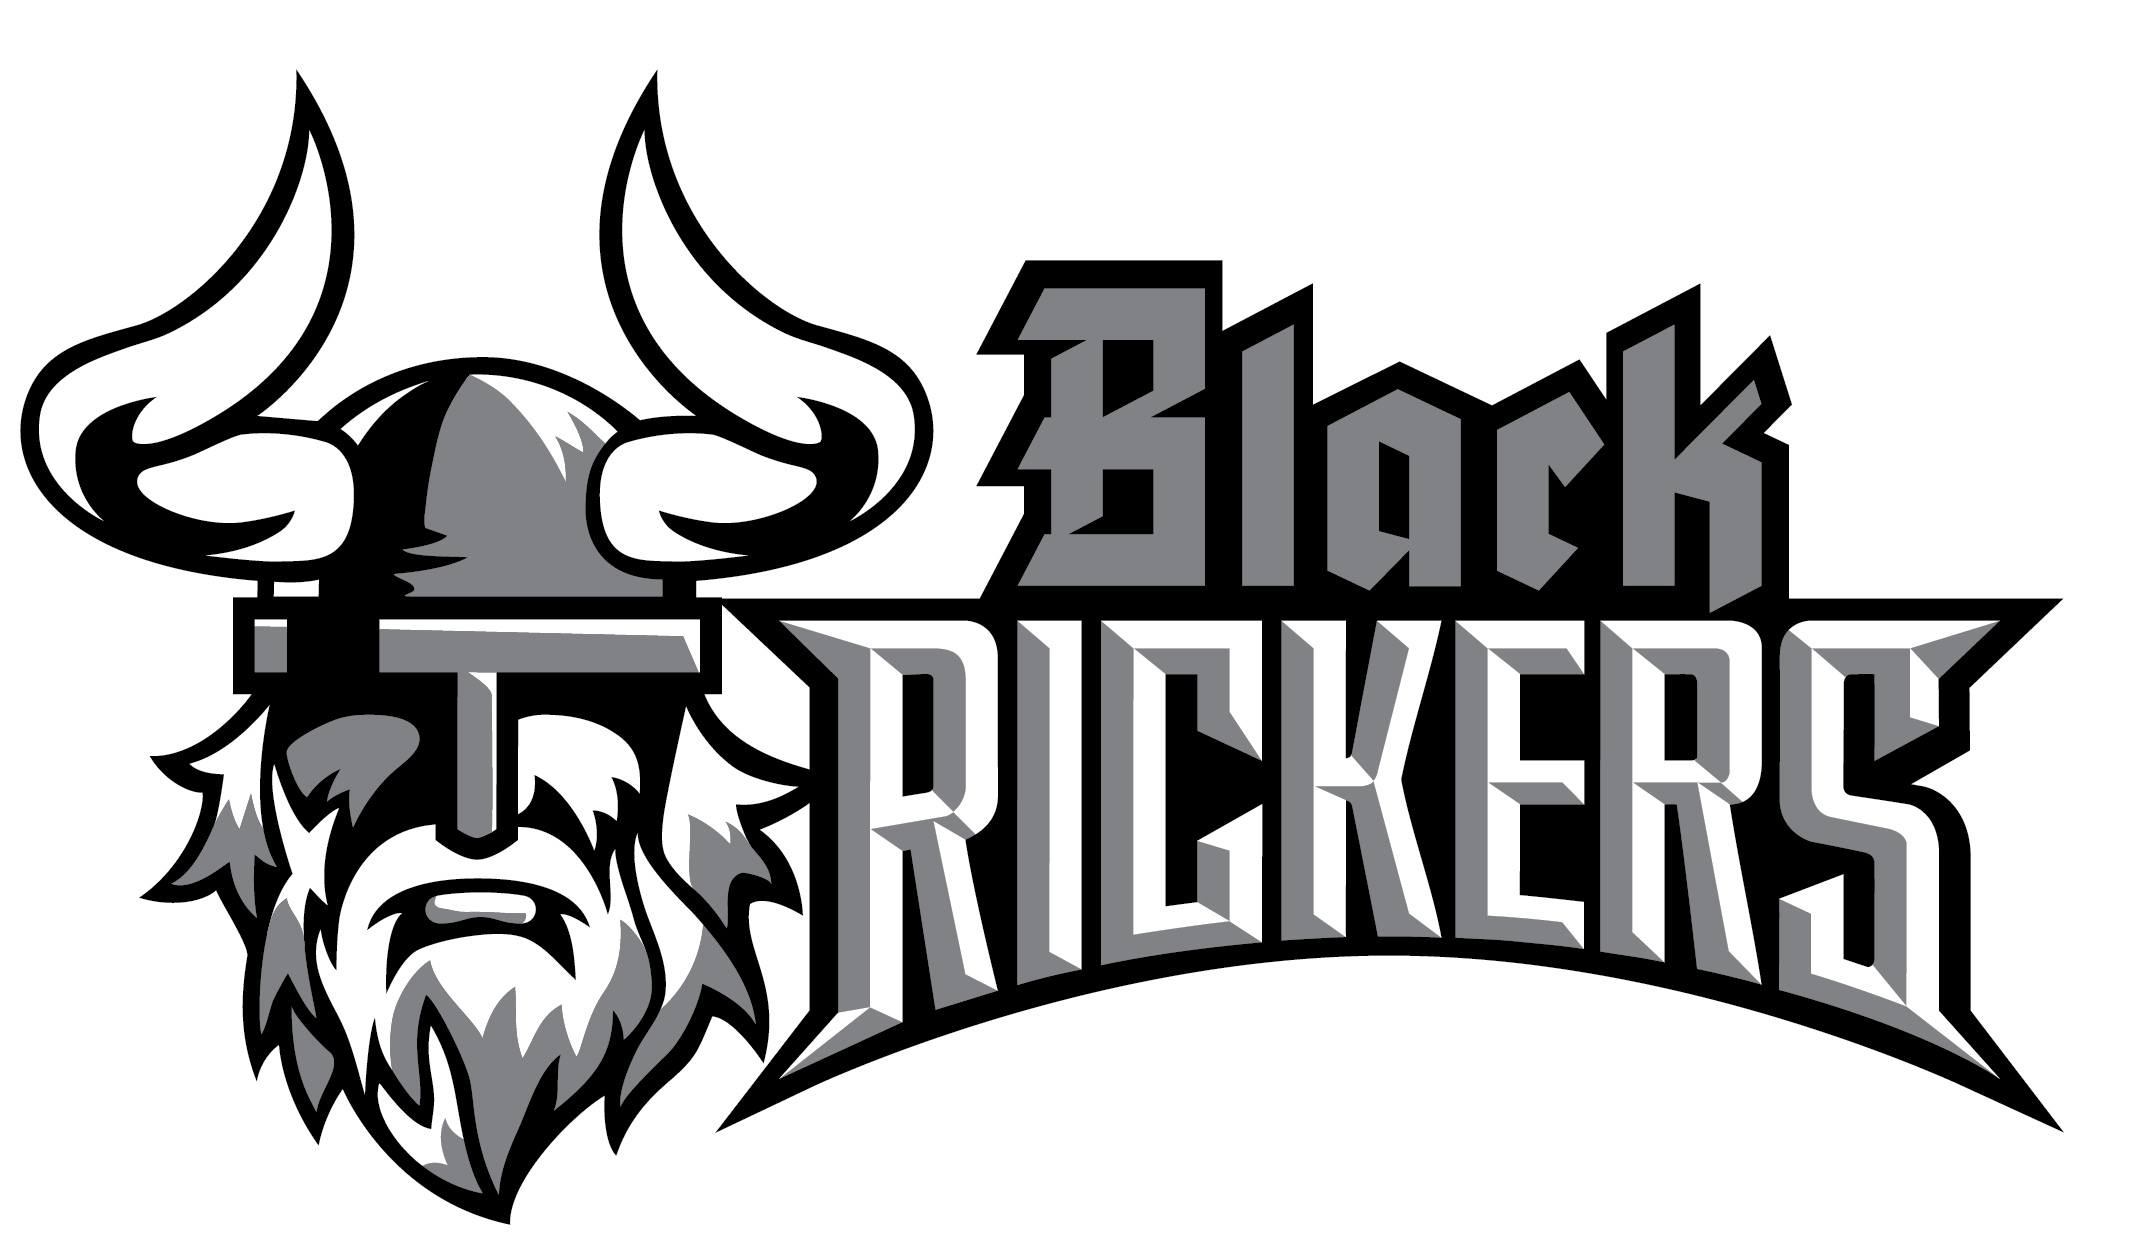 Black Rickers | Baseball Softball Club